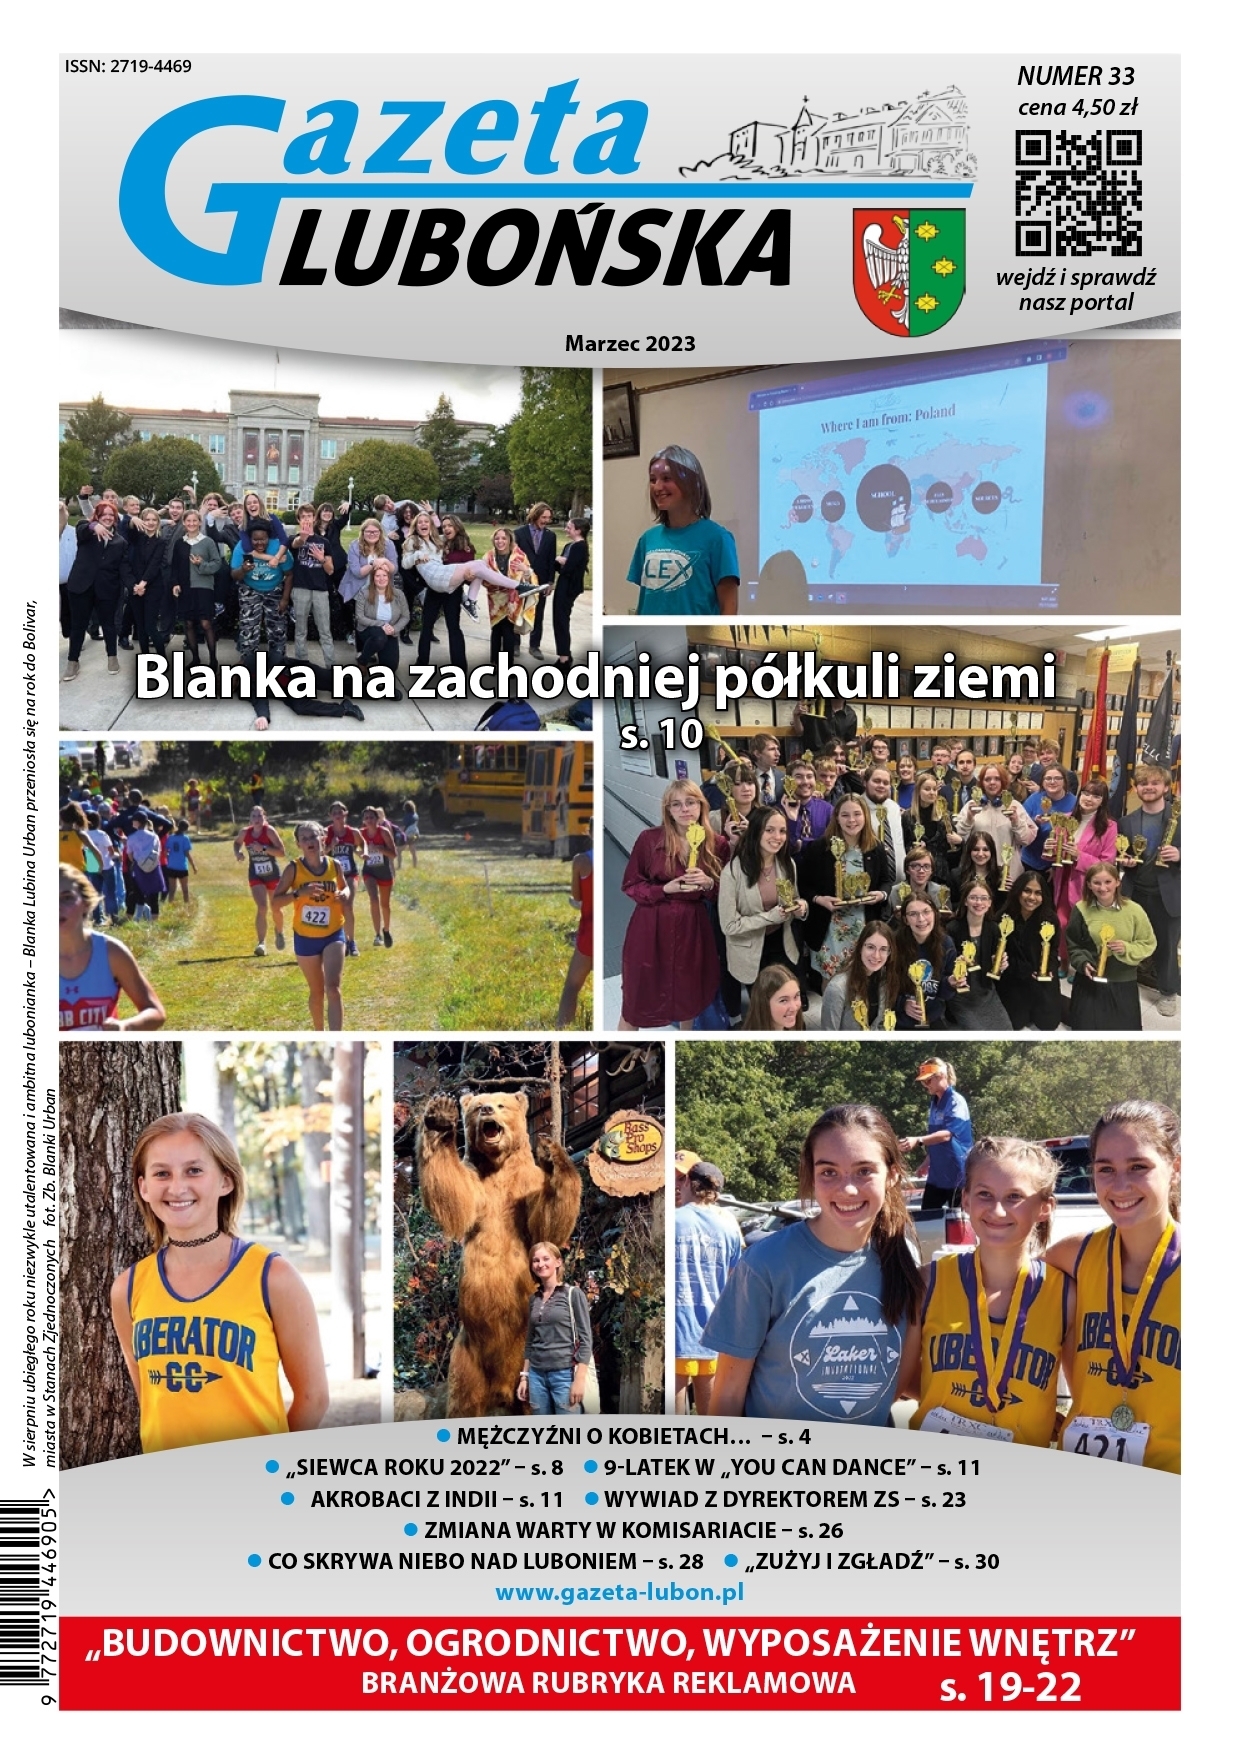 Gazeta Lubo艅ska wydanie Marzec 2023 - ok艂adka